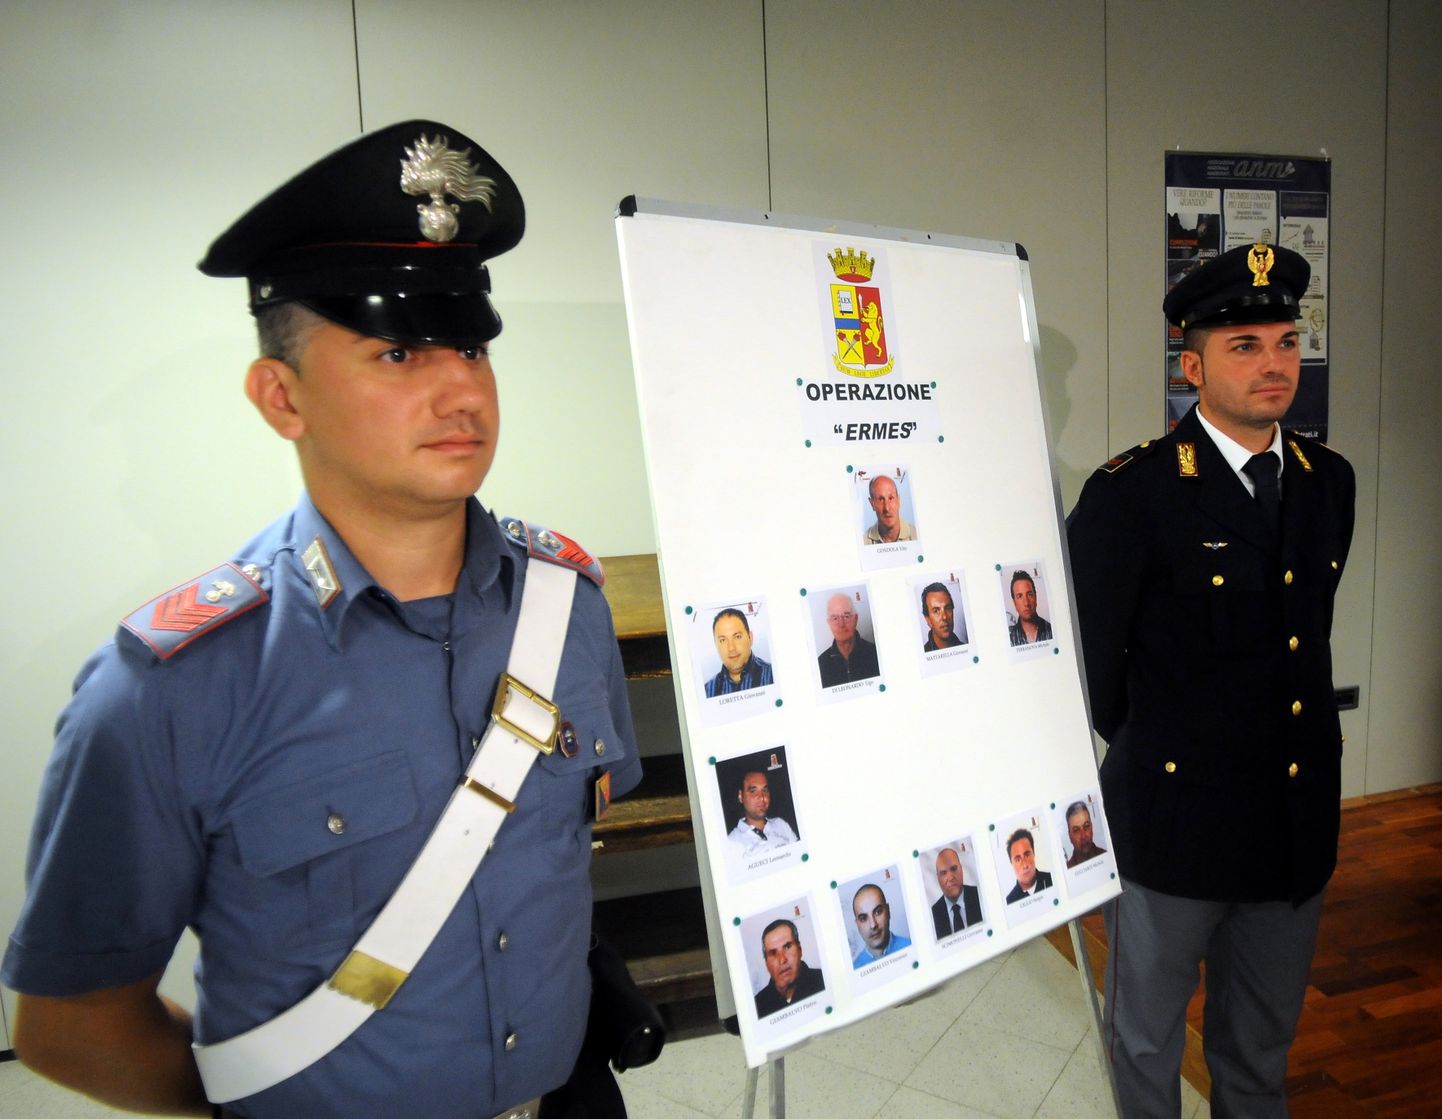 Itaalia karabinjeerid hoidmas 2015. aastal plakatit 11 isiku fotodega, kes abistasid väidetavalt maffiasündikaat Cosa Nostra tagaotsitavat liidrit Matteo Messina Denarot.